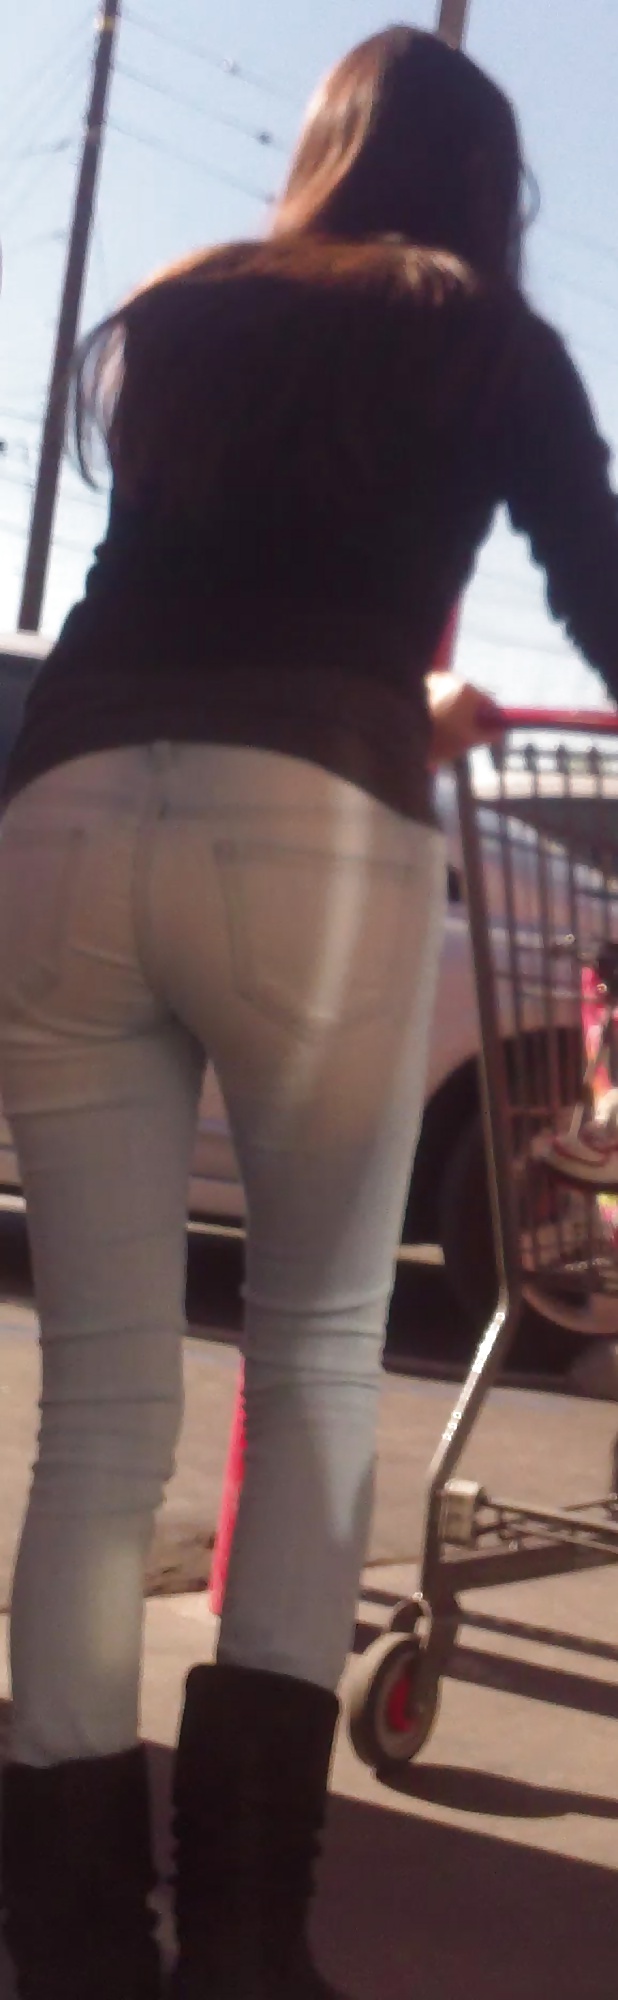 Popular teen girls ass & butt in jeans Part 6 #32009678